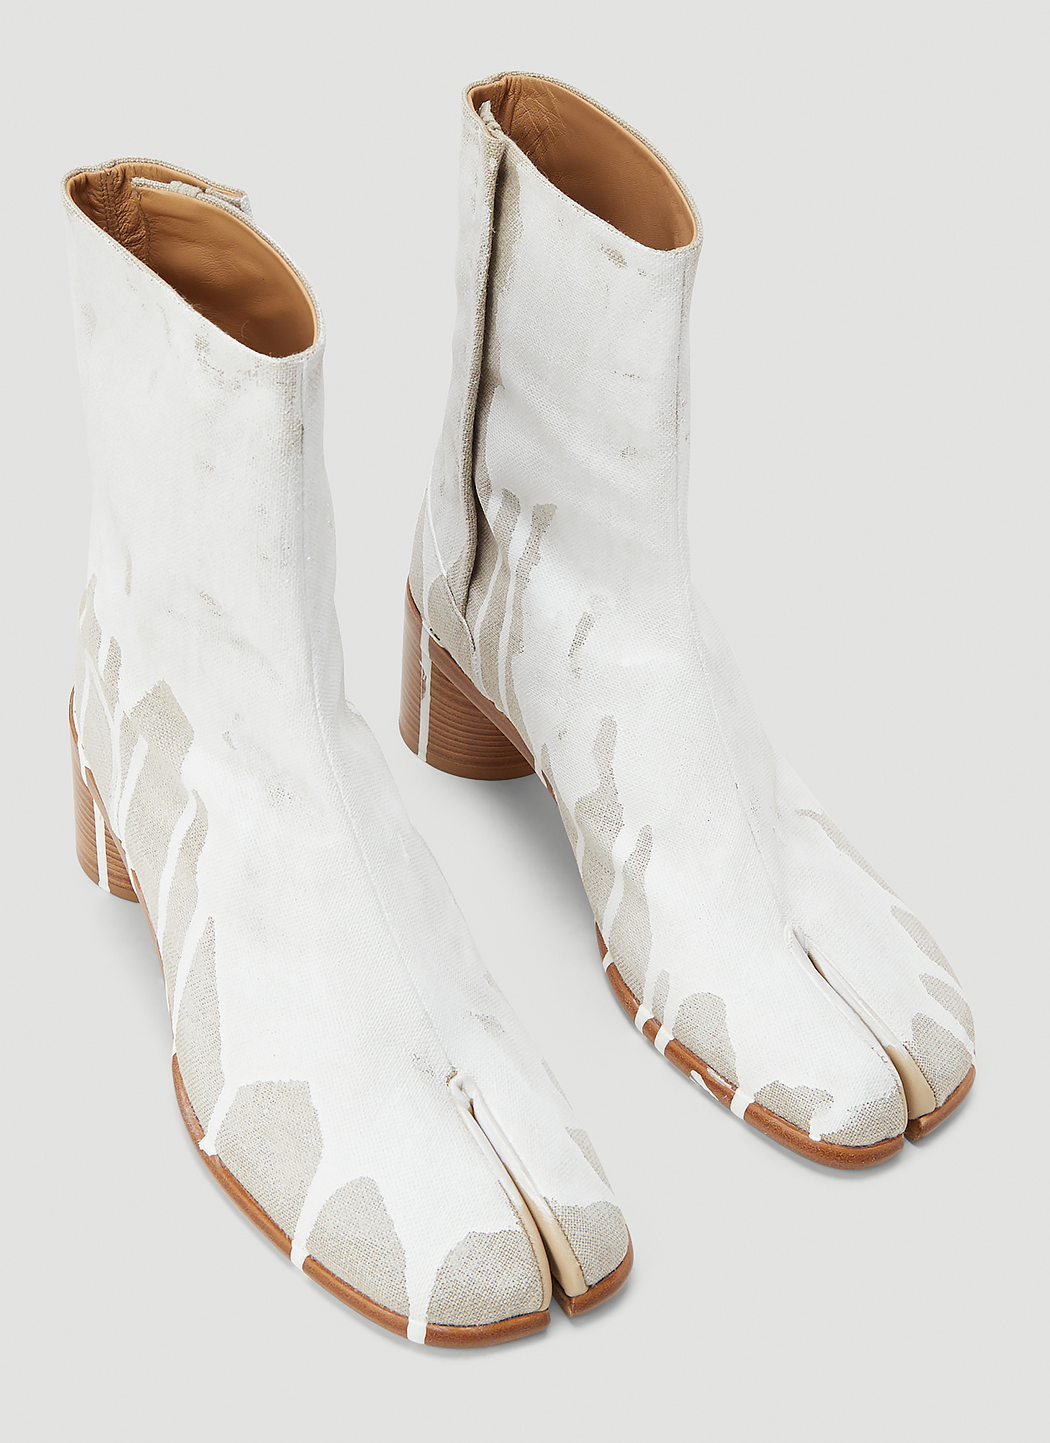 Maison Margiela Men's Tabi Paint Splatter Boots in White | LN-CC